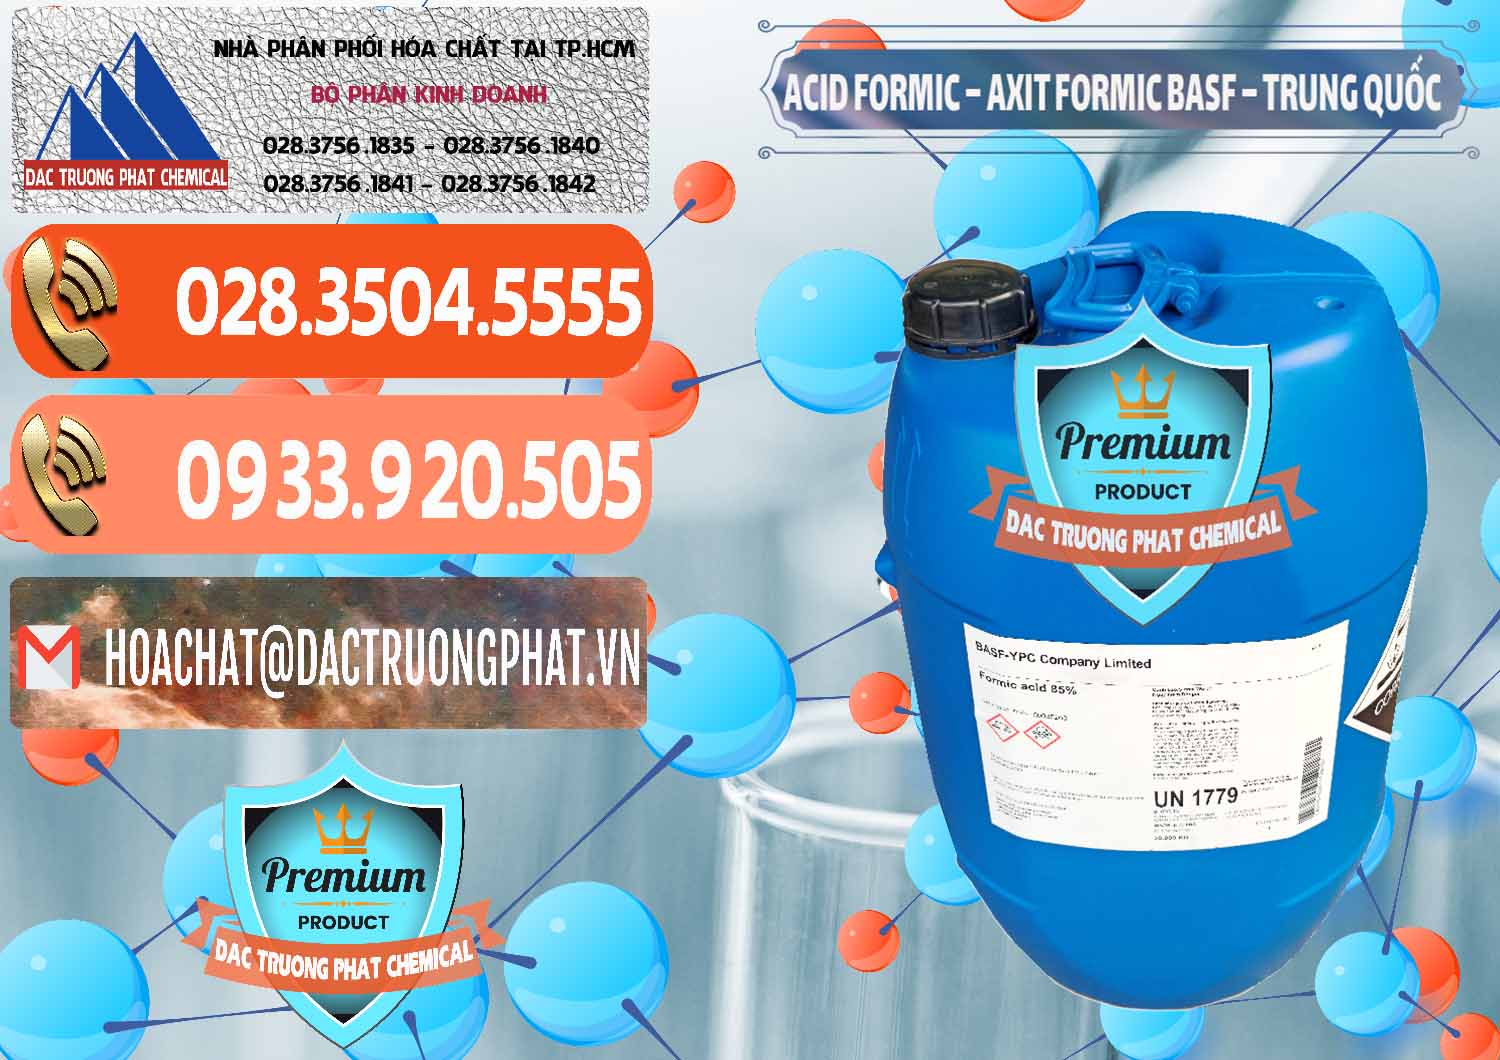 Nơi chuyên bán _ cung cấp Acid Formic - Axit Formic BASF Trung Quốc China - 0025 - Công ty chuyên kinh doanh - cung cấp hóa chất tại TP.HCM - hoachatmientay.com